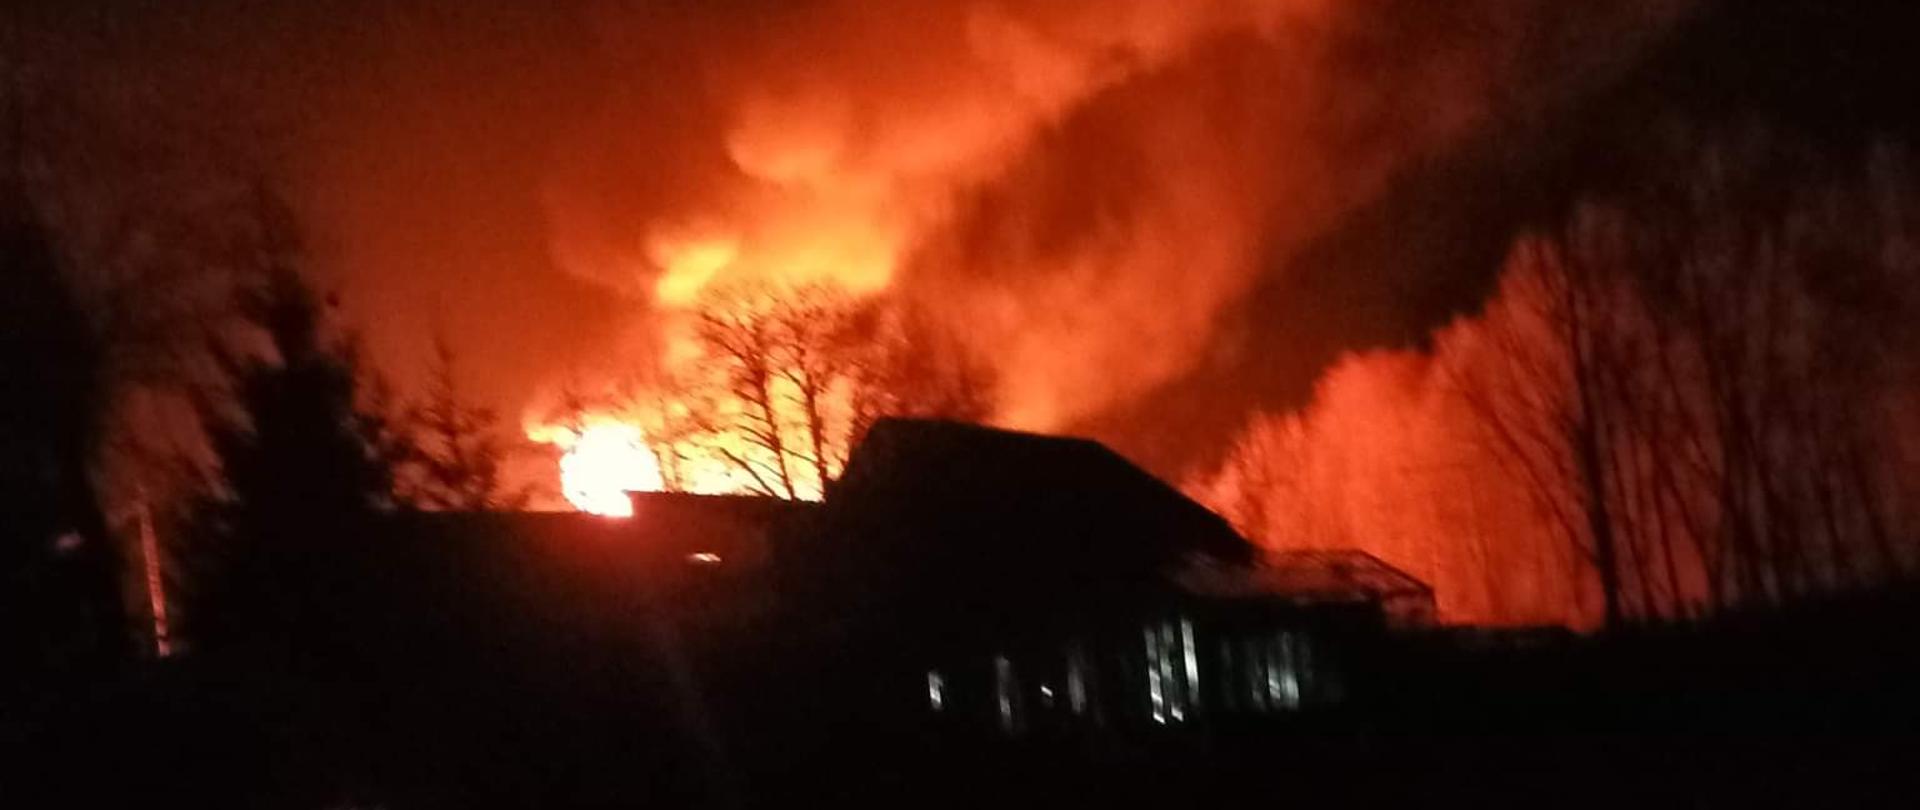 Na zdjęciu widoczny jest płonący budynek. Zdjęcie jest zrobione w nocy. W tle widać płomienie i kłęby dymu.